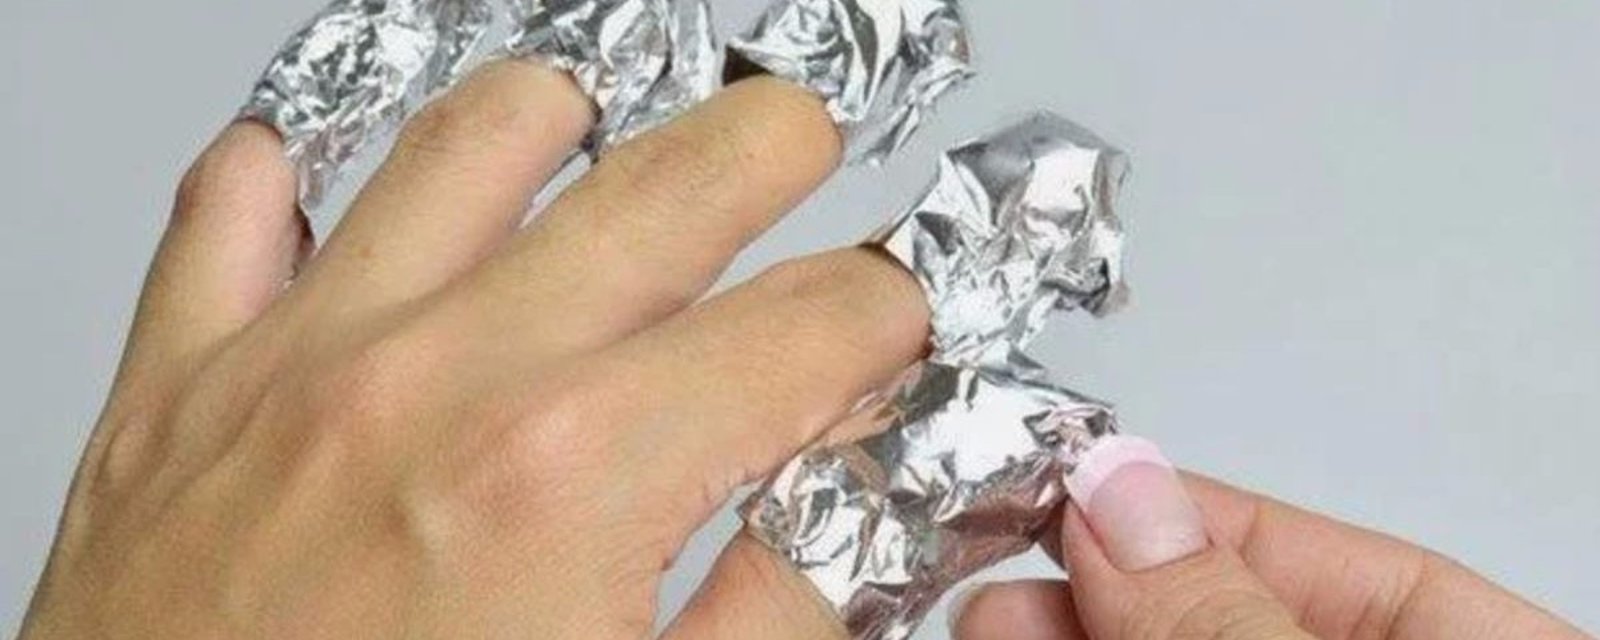 La raison pour laquelle elle enveloppe ses doigts dans de l’aluminium est franchement surprenante!